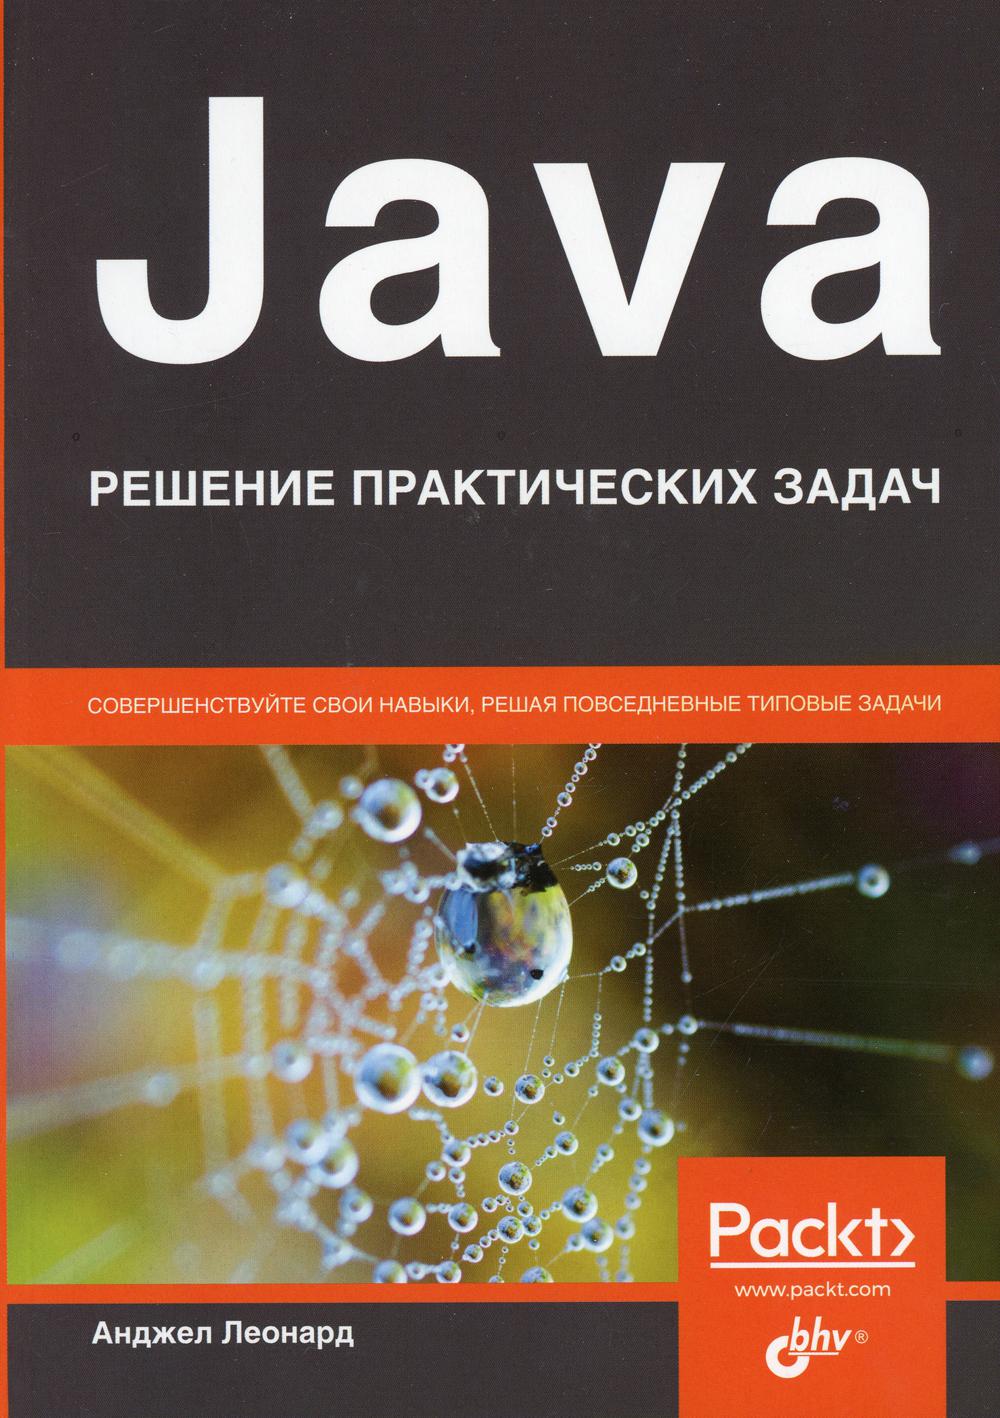 Java. Решение практических задач